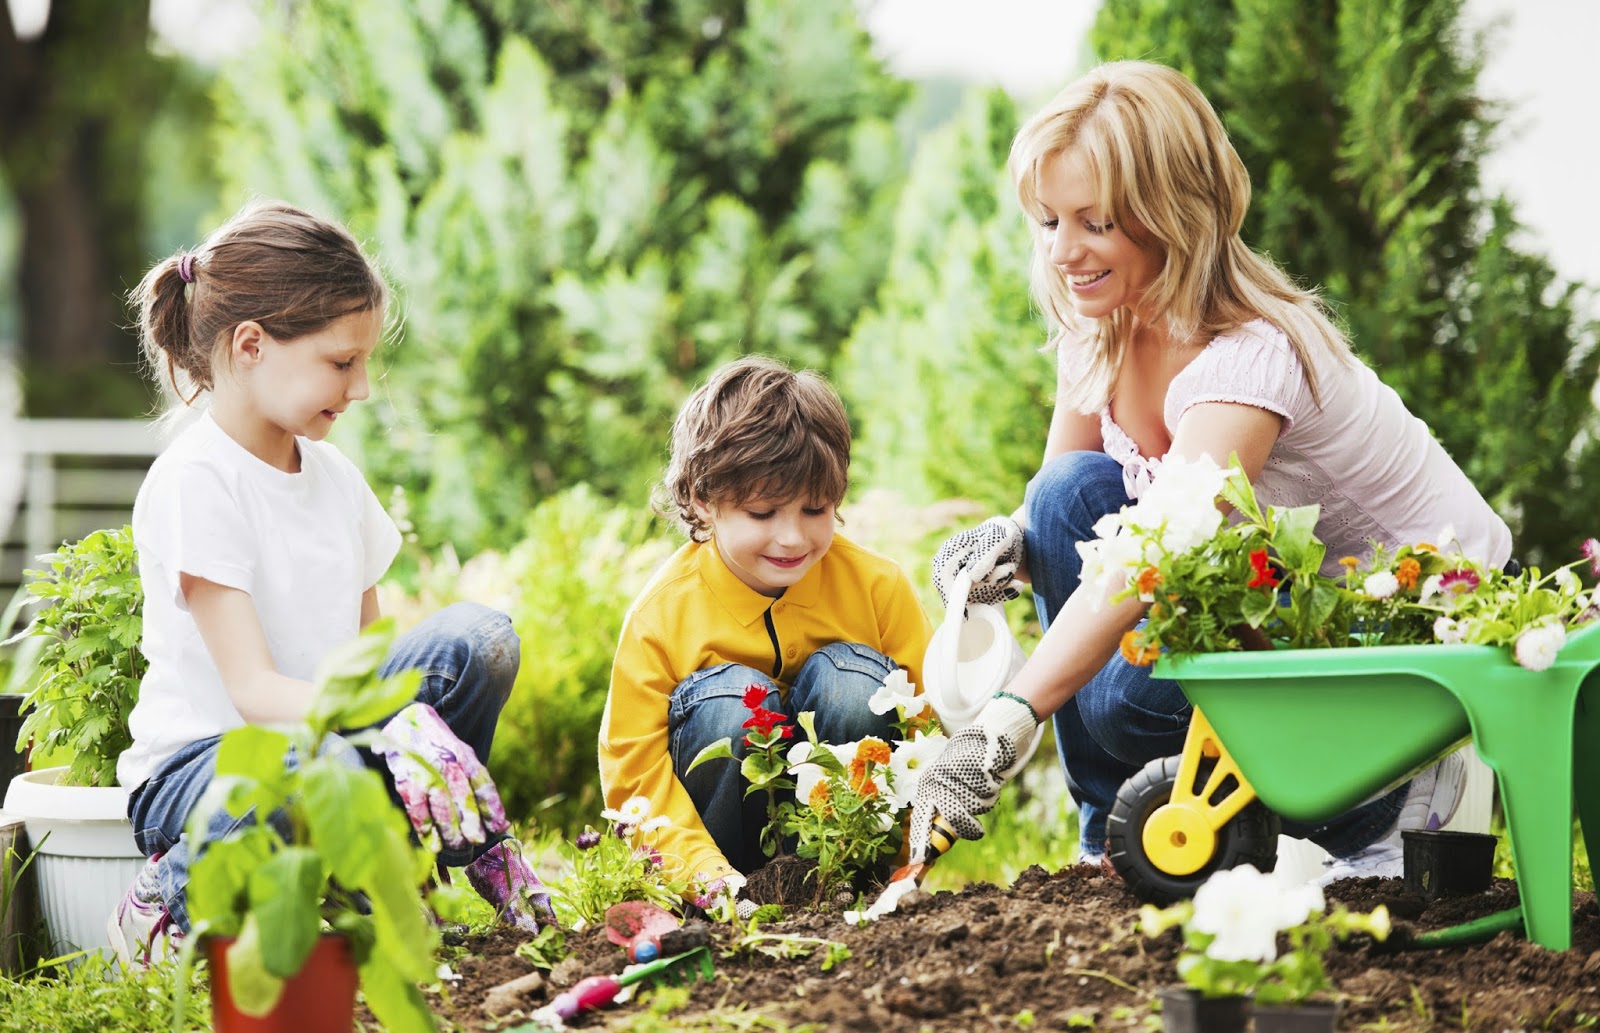 People take care of nature. Огород для детей. Семья в саду. Дети помогают родителям. Дети в саду.